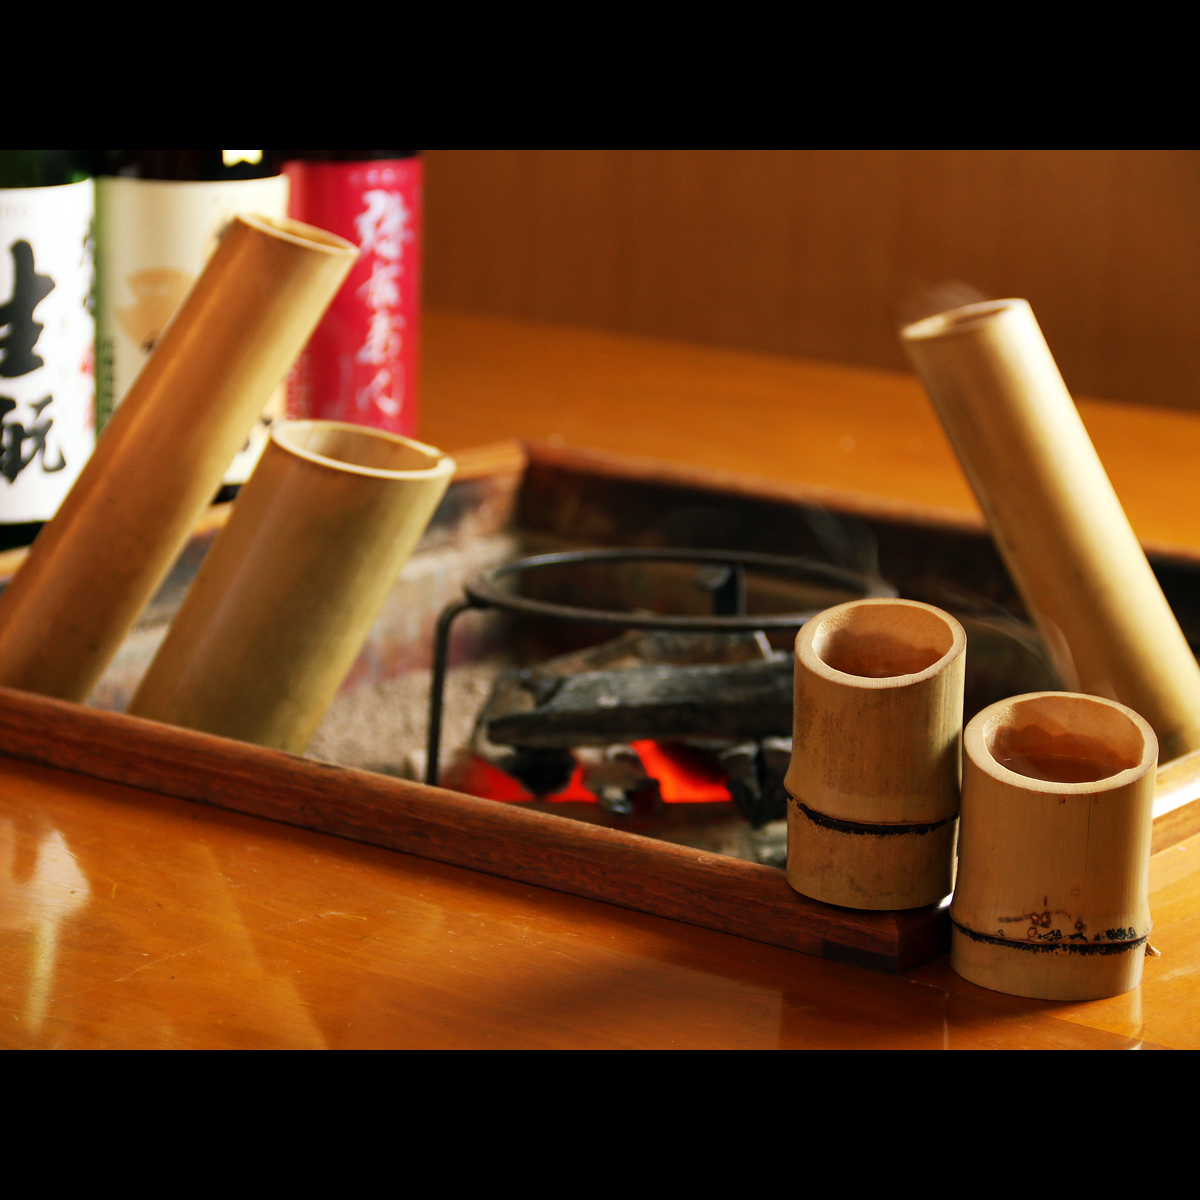 囲炉裏炭火ならではの楽しみ方。竹酒熱燗は、じっくりと温まるので、まろやかな口当たりに・・・